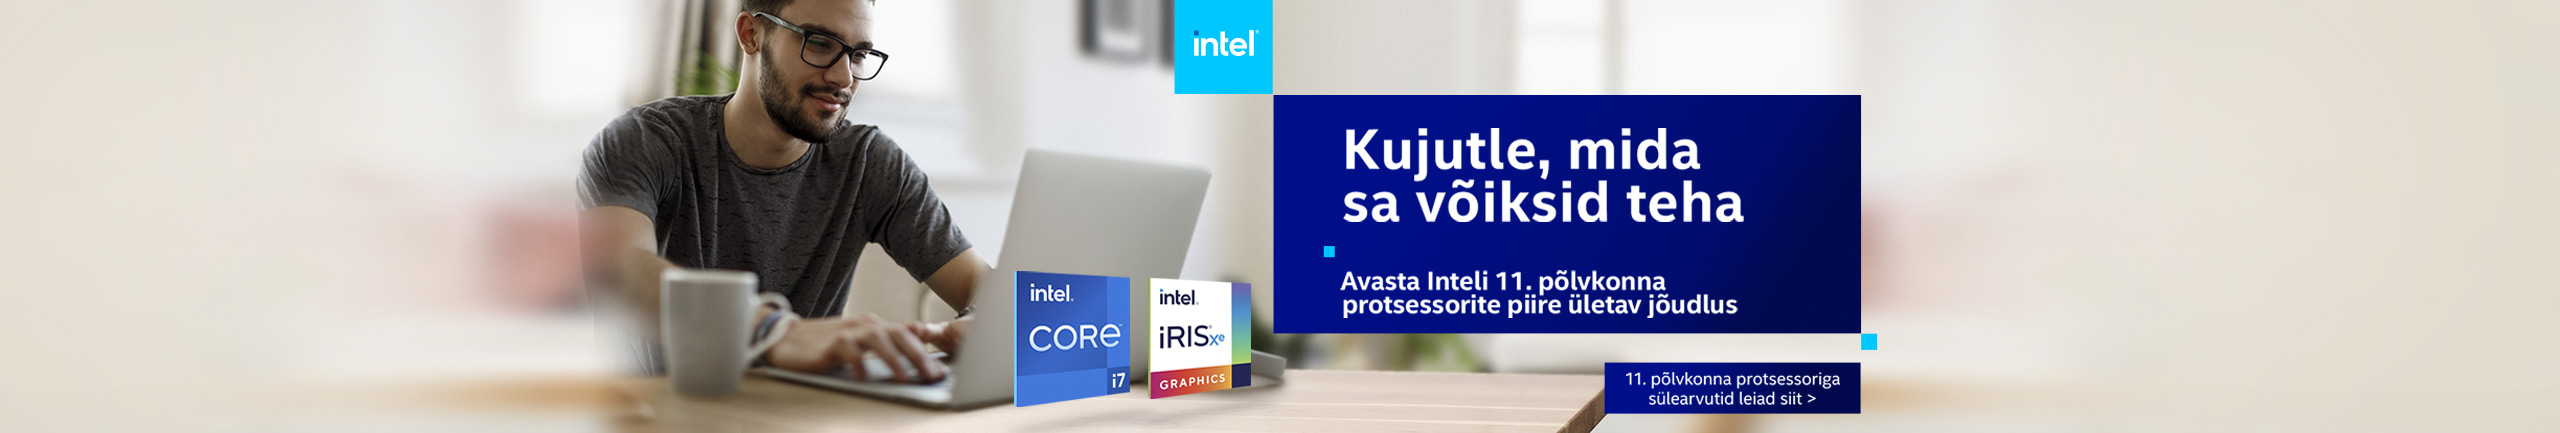 Intel 11